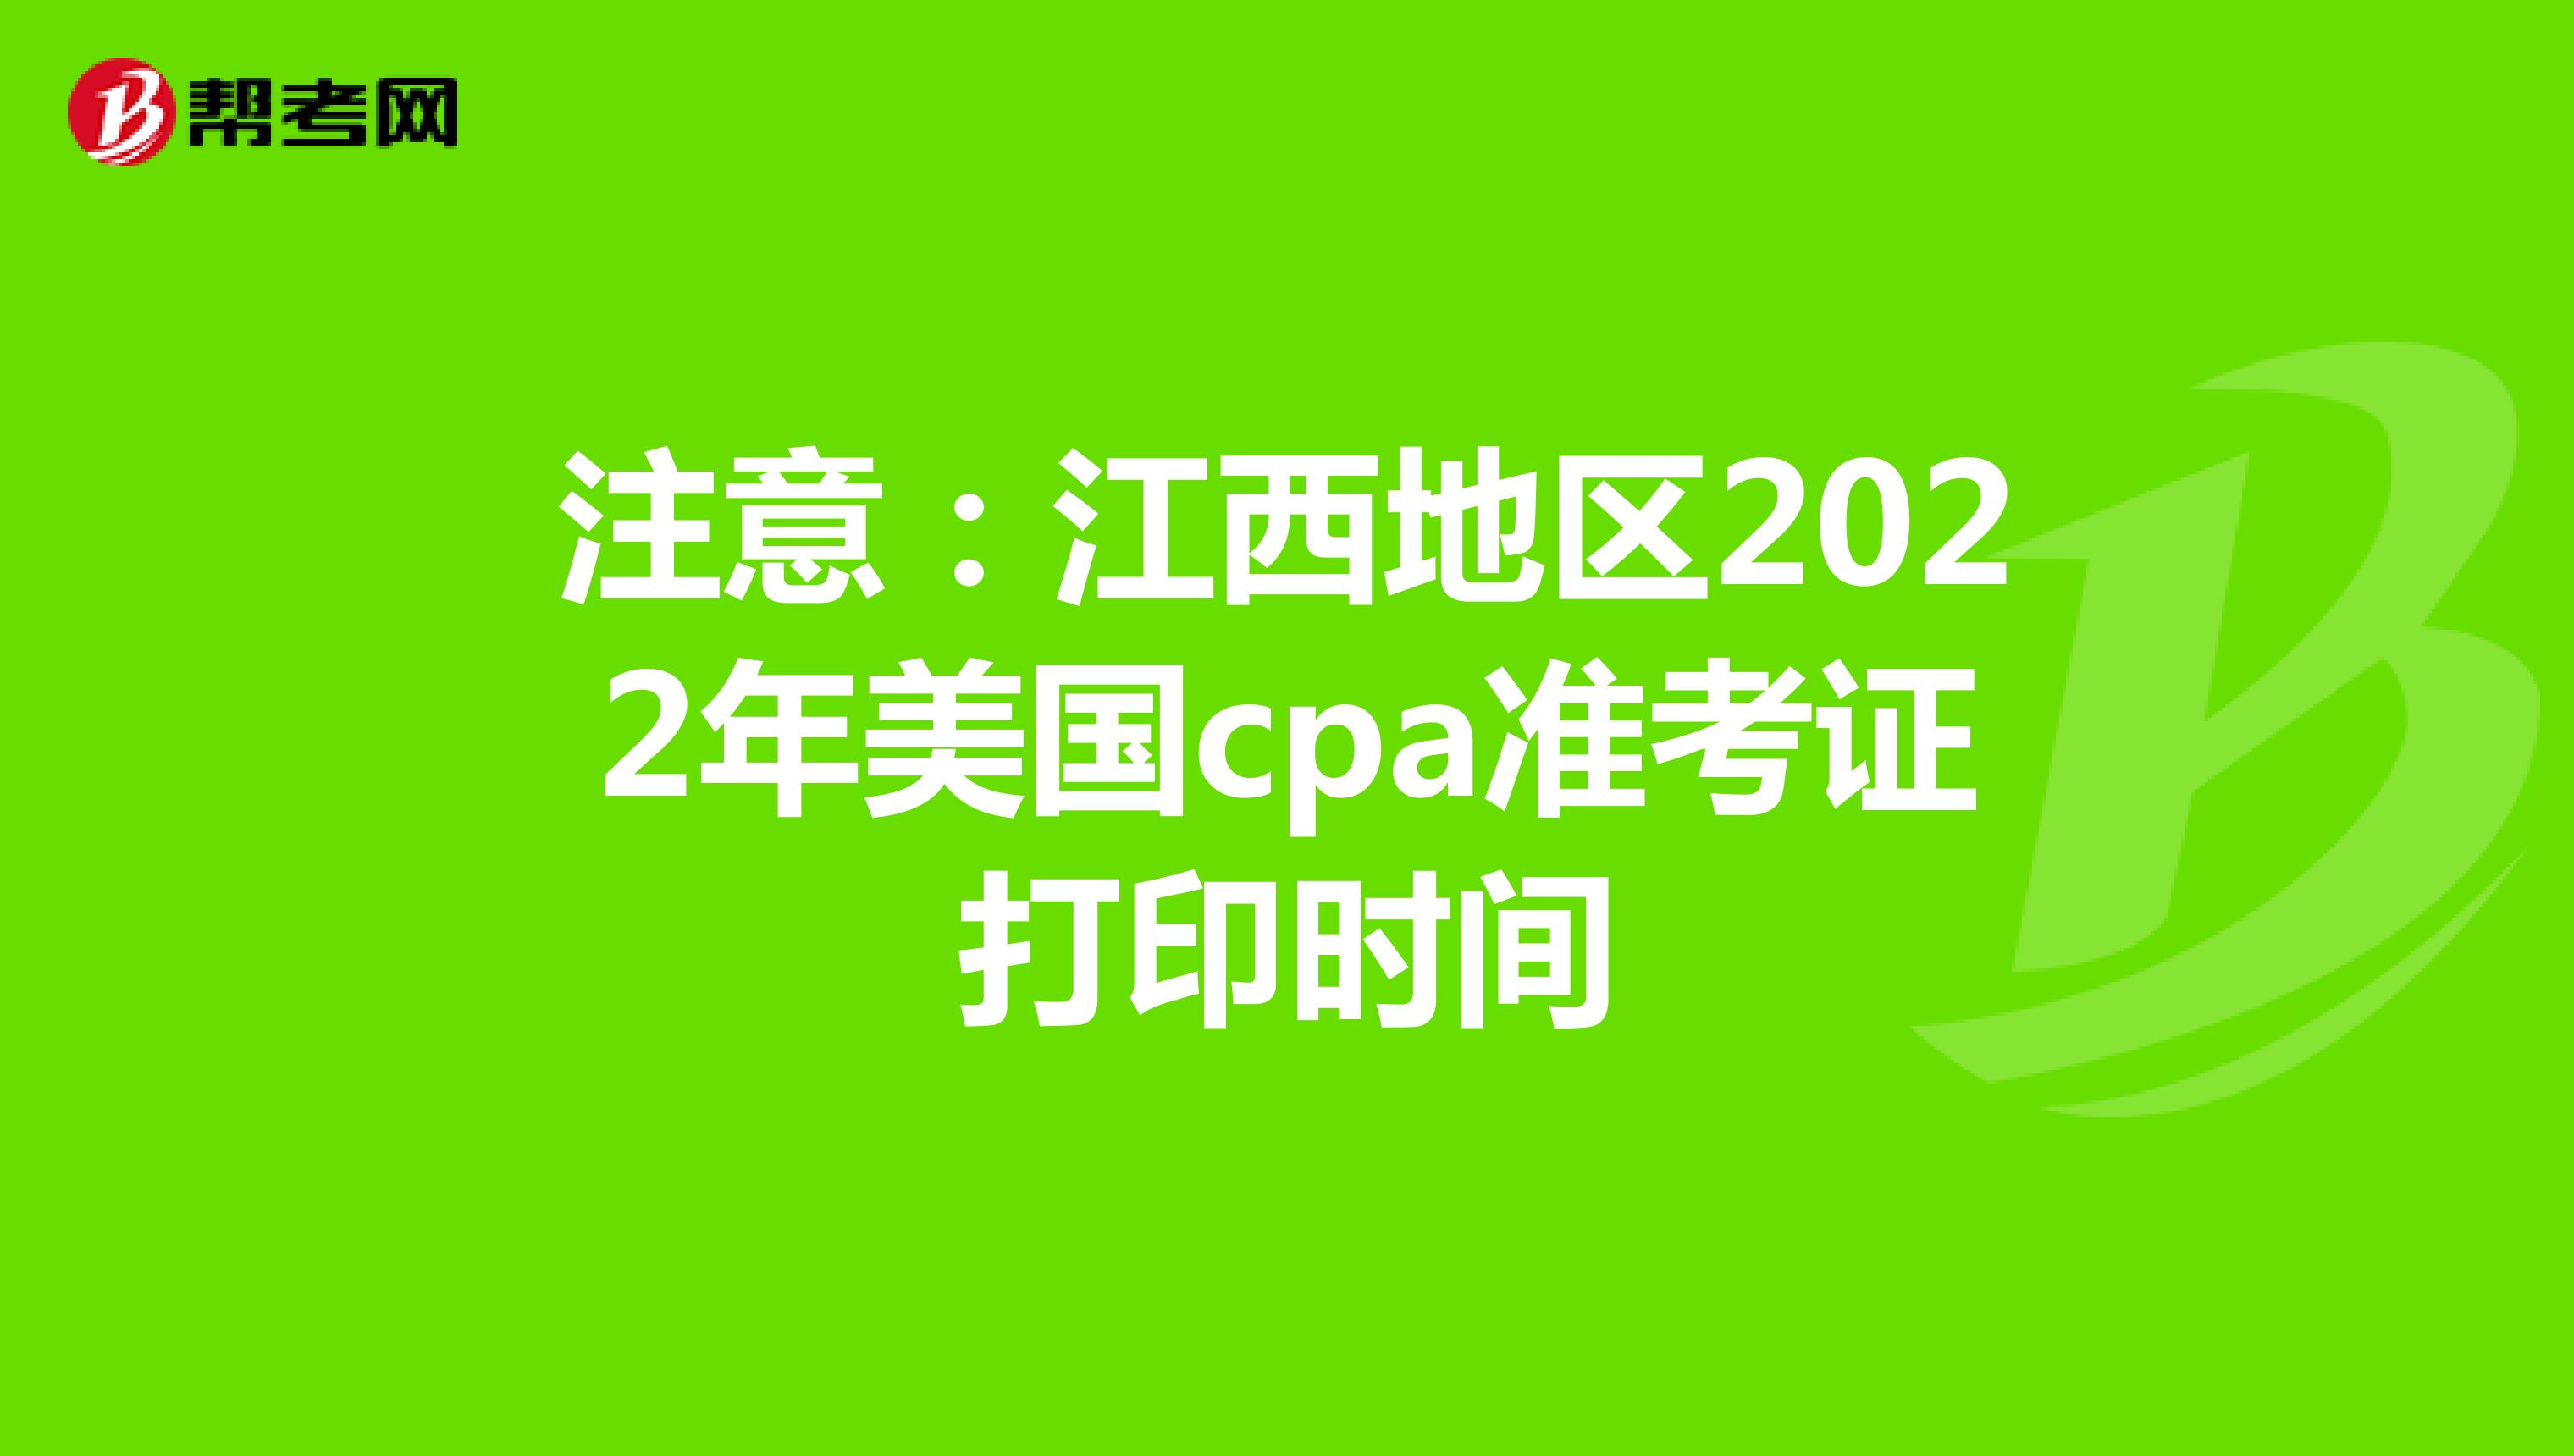 注意：江西地区2022年美国cpa准考证打印时间